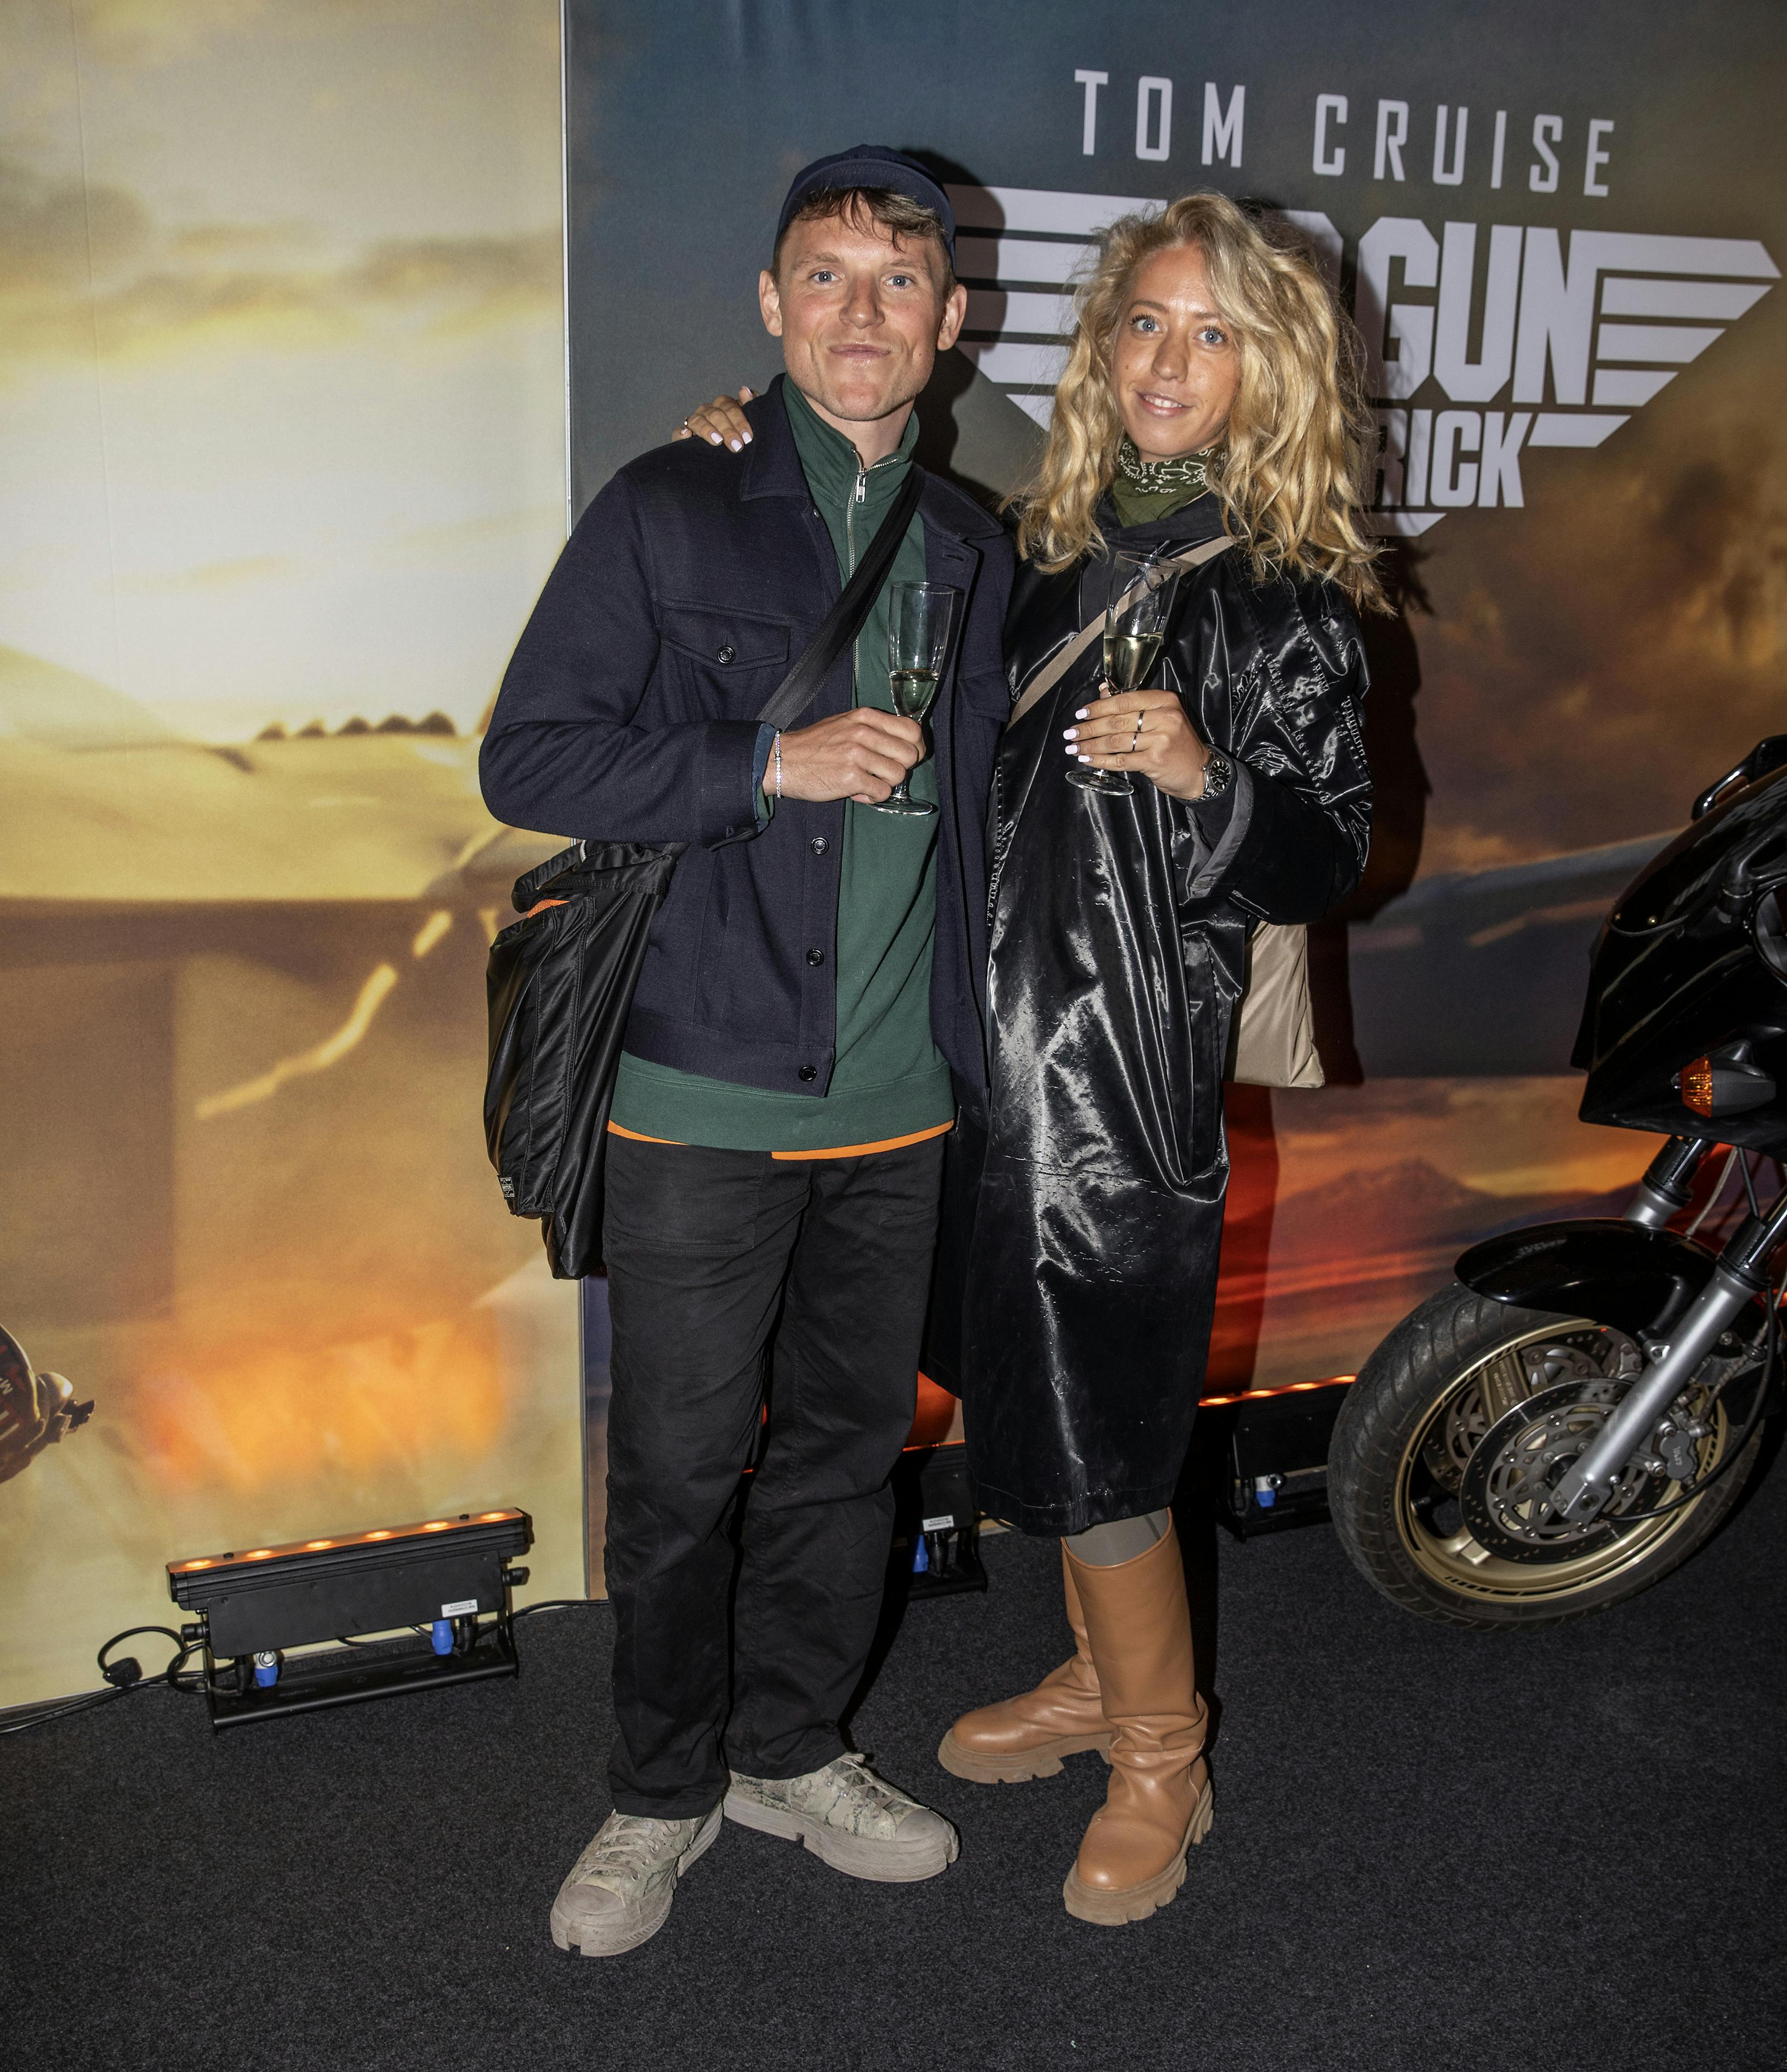 Tobias Hamann og Patricia Thyberg til premieren på "Top Gun 2" i Imperial.
